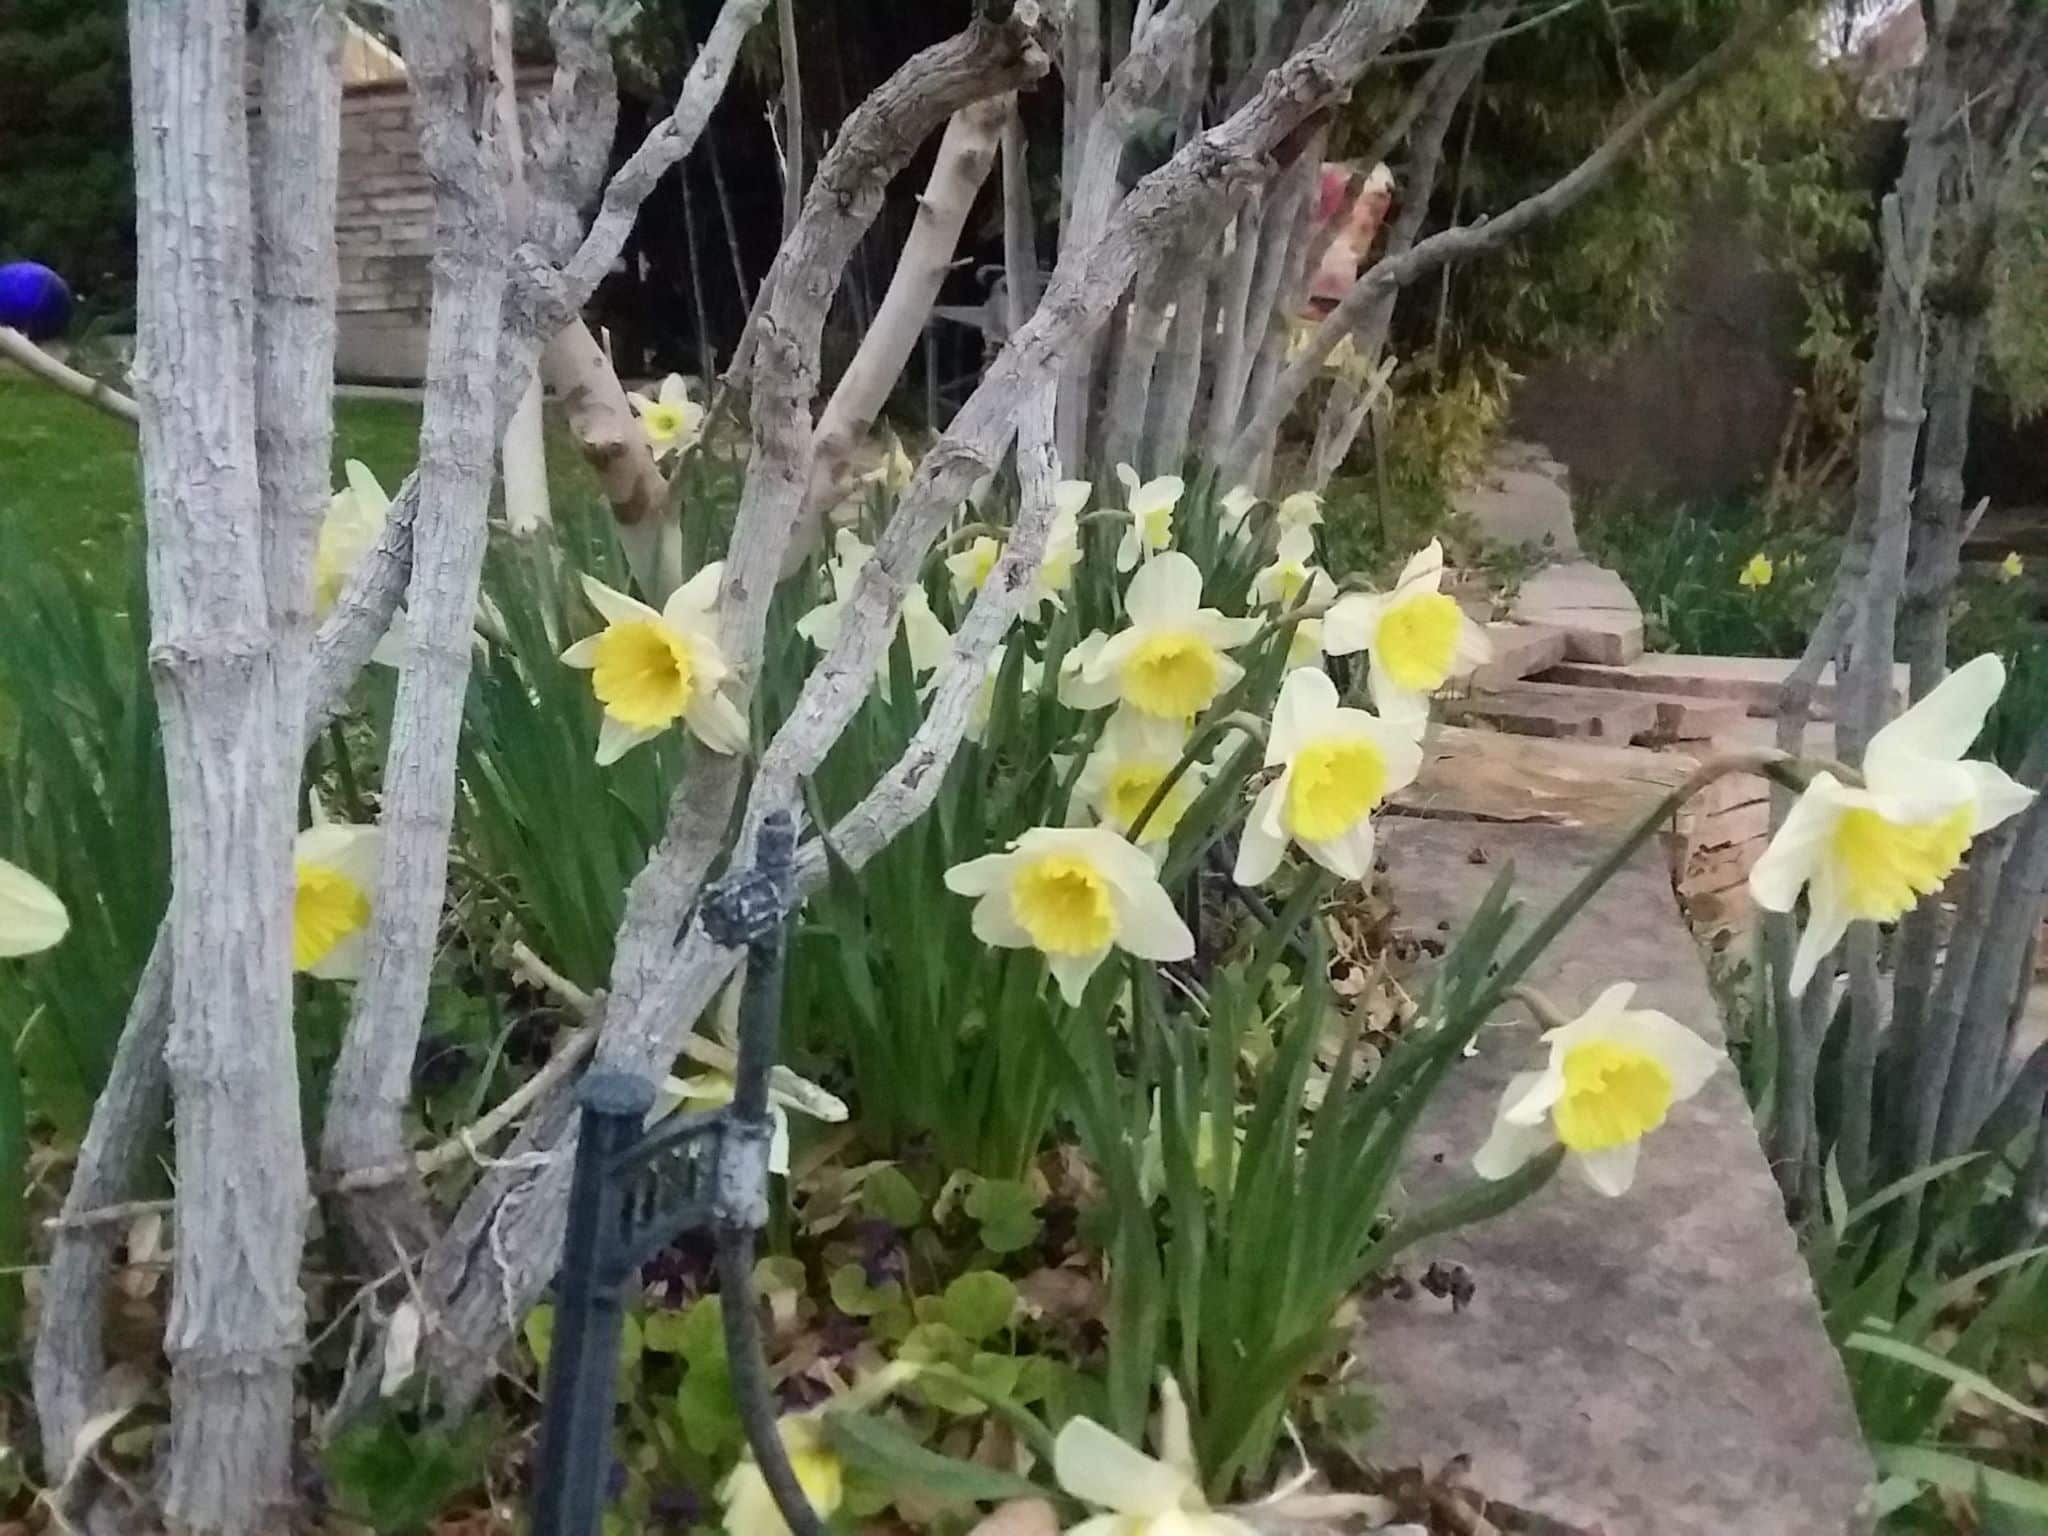 Nature's bouquet